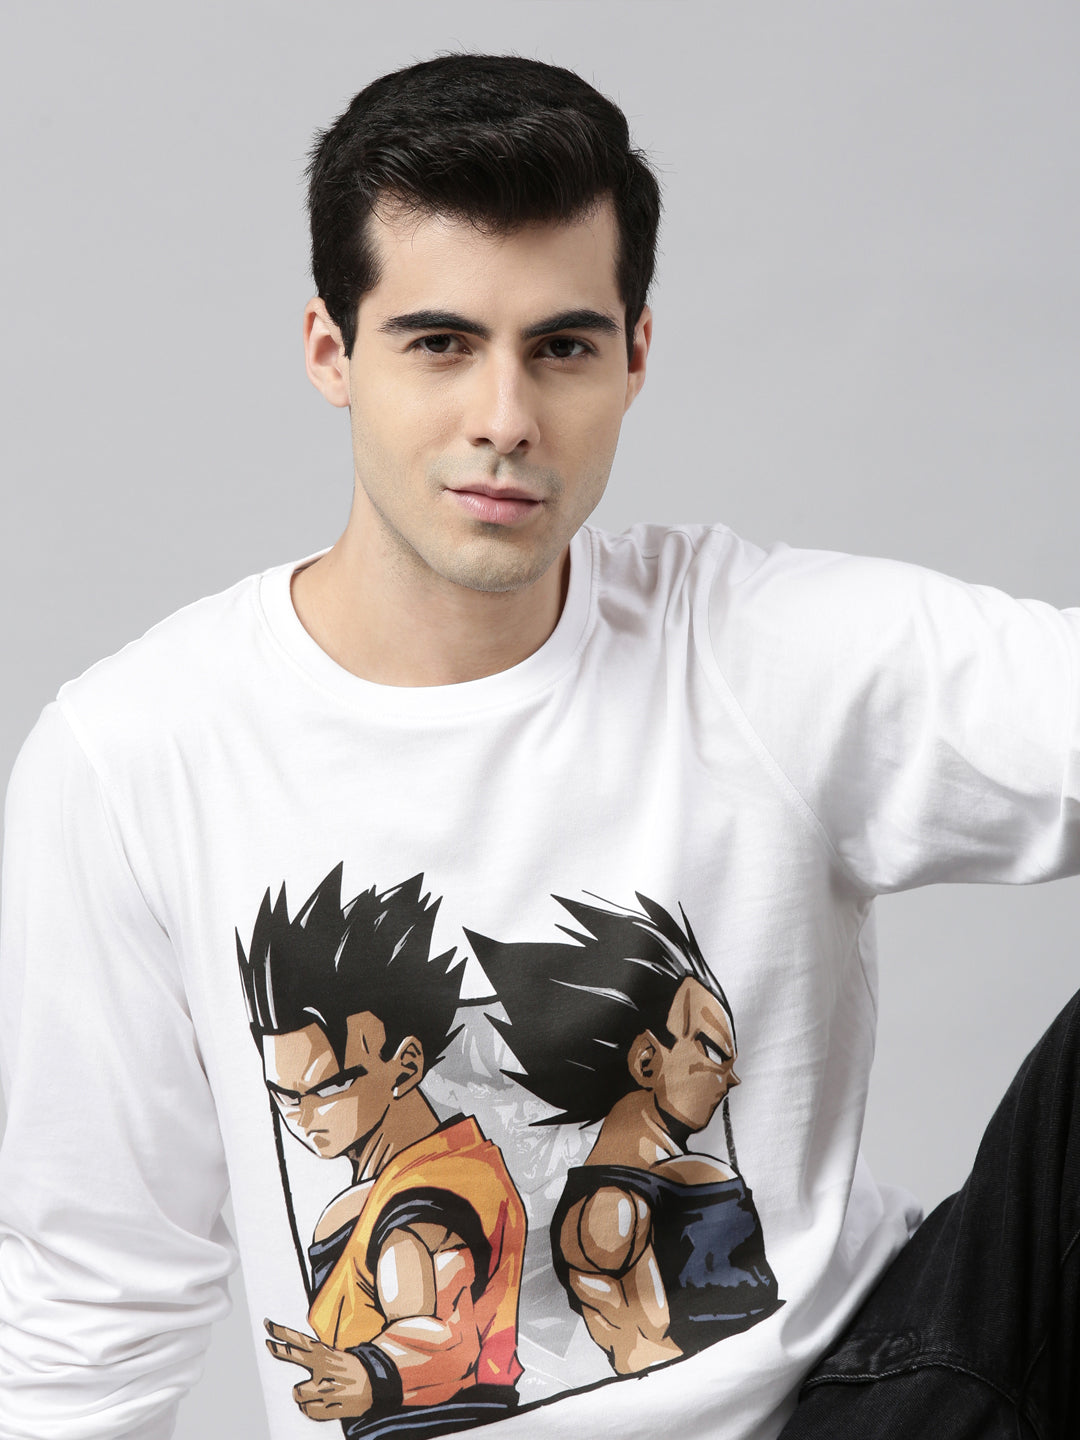 Goku Vegeta Frieza Majin Buu Gohan, Goku Anime T-Shirt Graphic T-Shirts Bushirt   